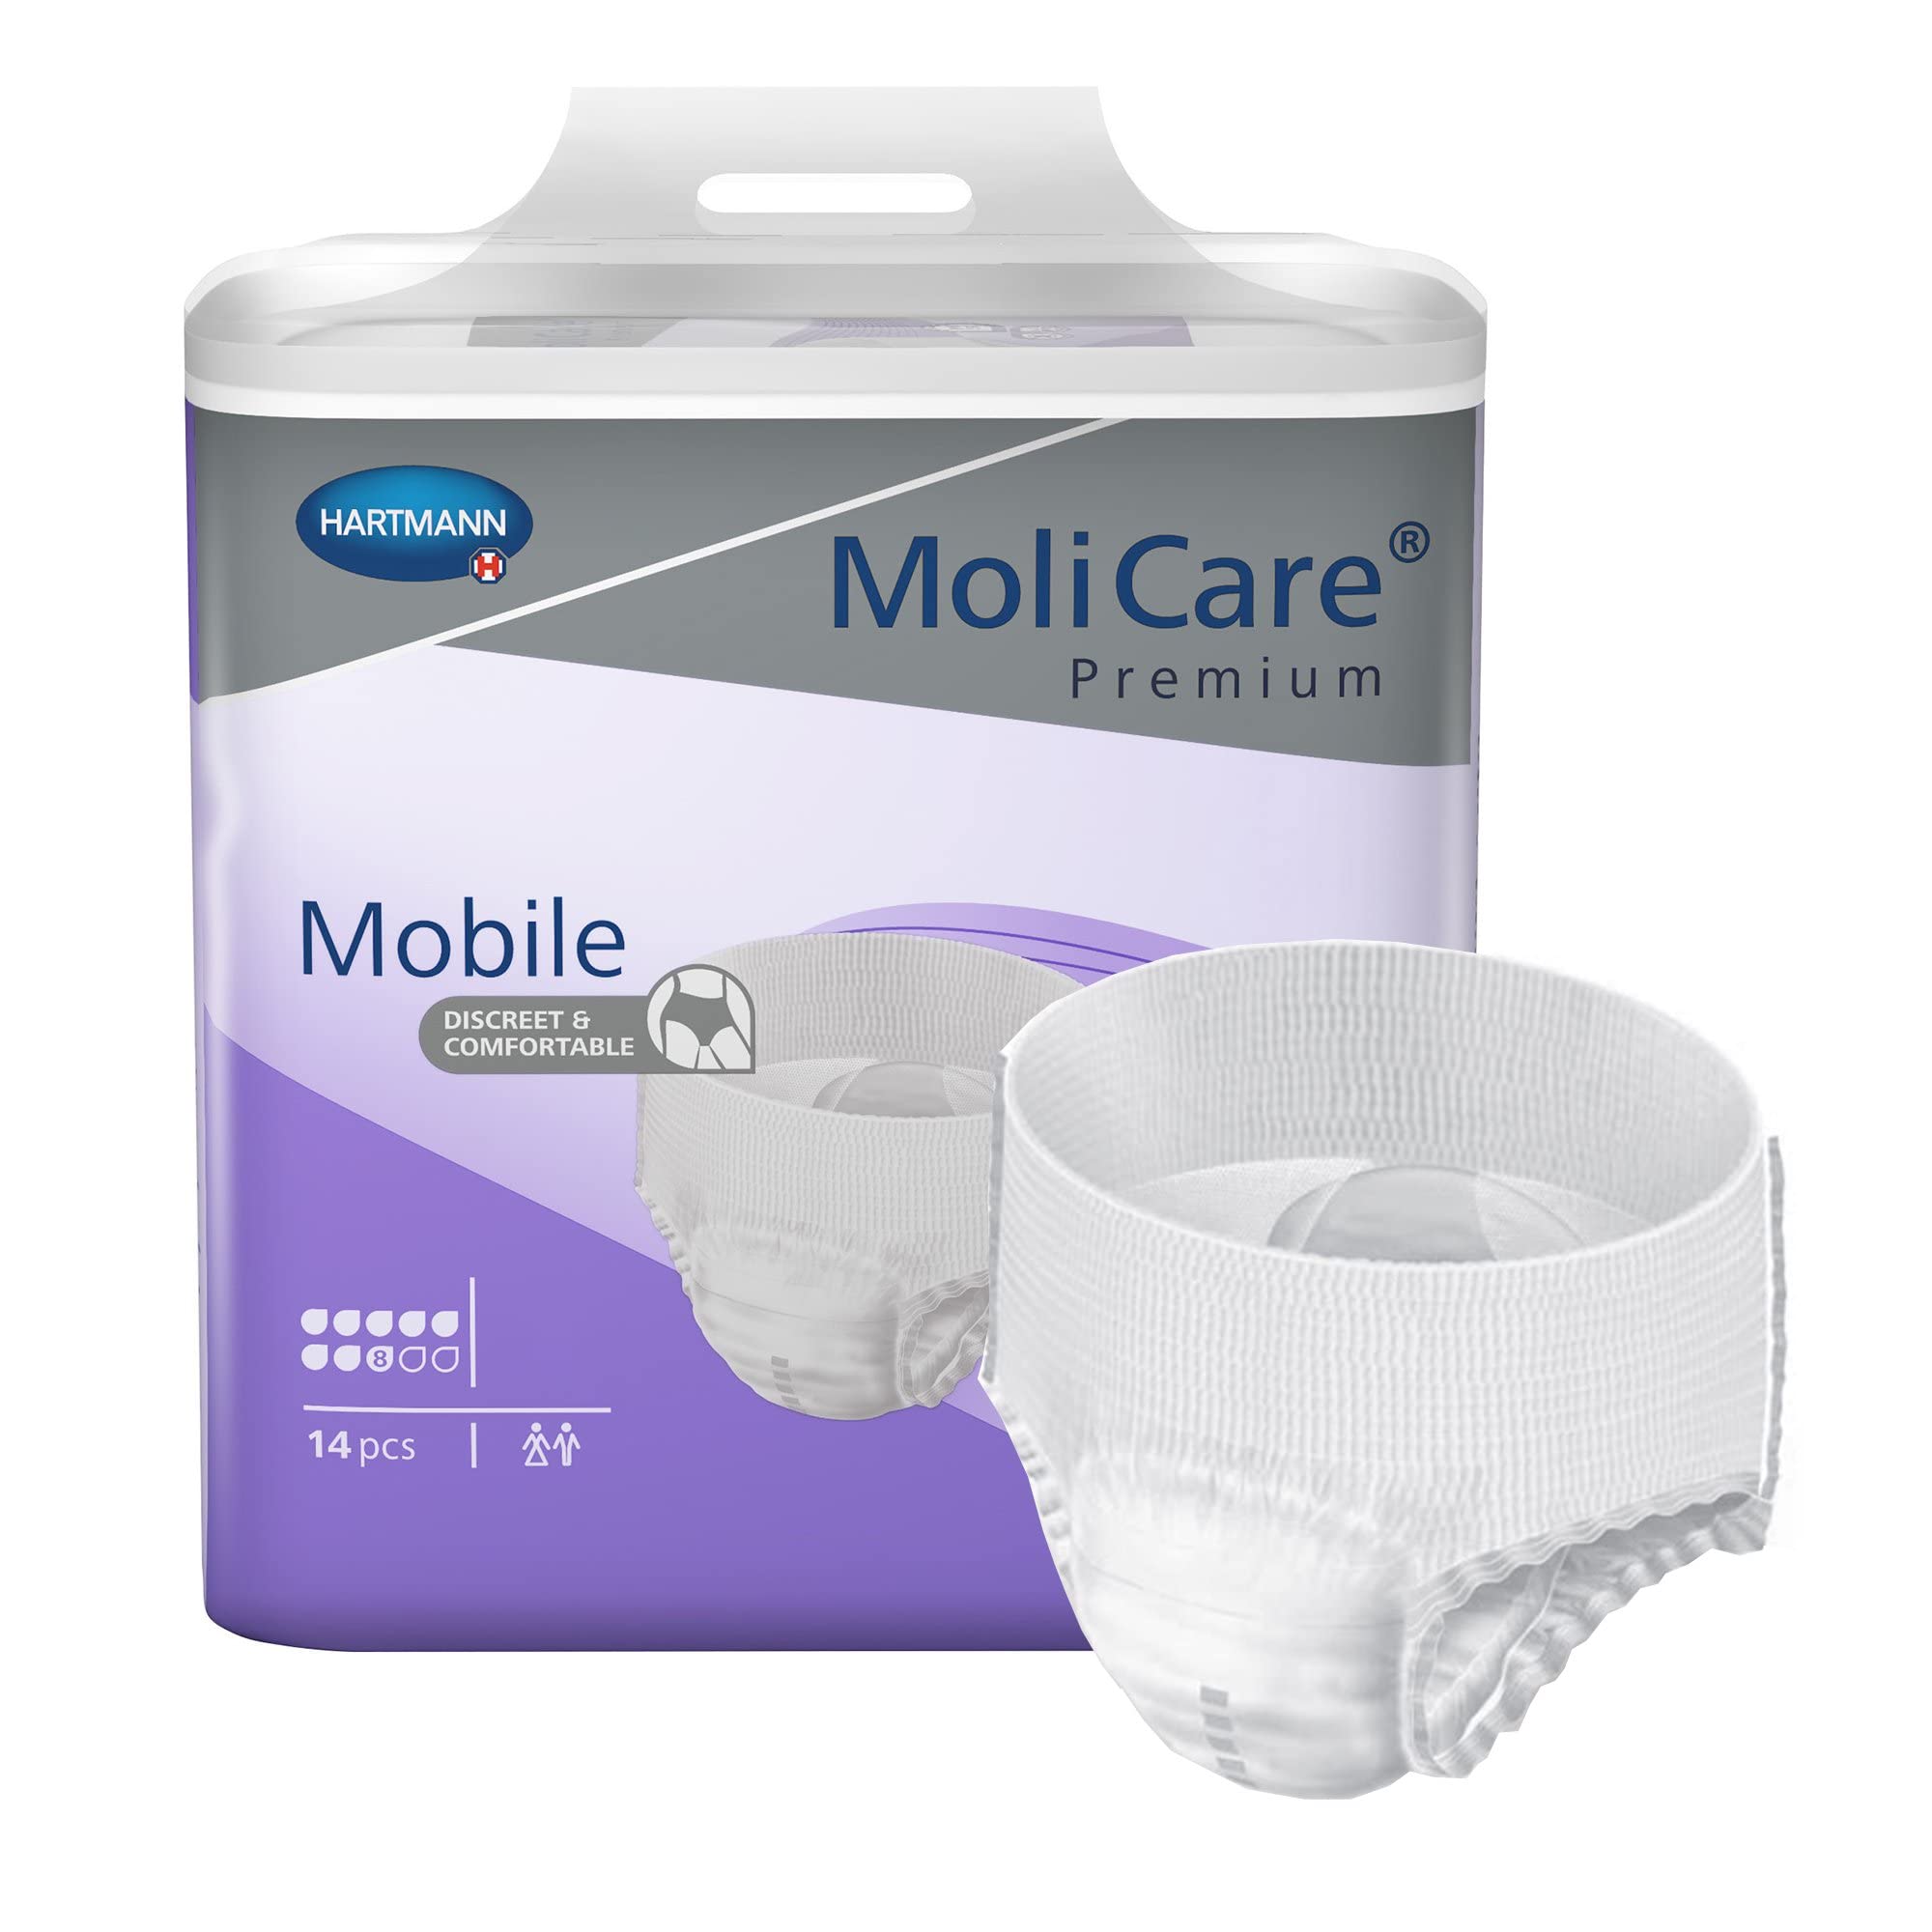 MoliCare Premium Mobile Einweghose: Diskrete Anwendung bei Inkontinenz für Frauen und Männer, 8 Tropfen, Gr. S (60-90 cm Hüftumfang), 4x14 Stück